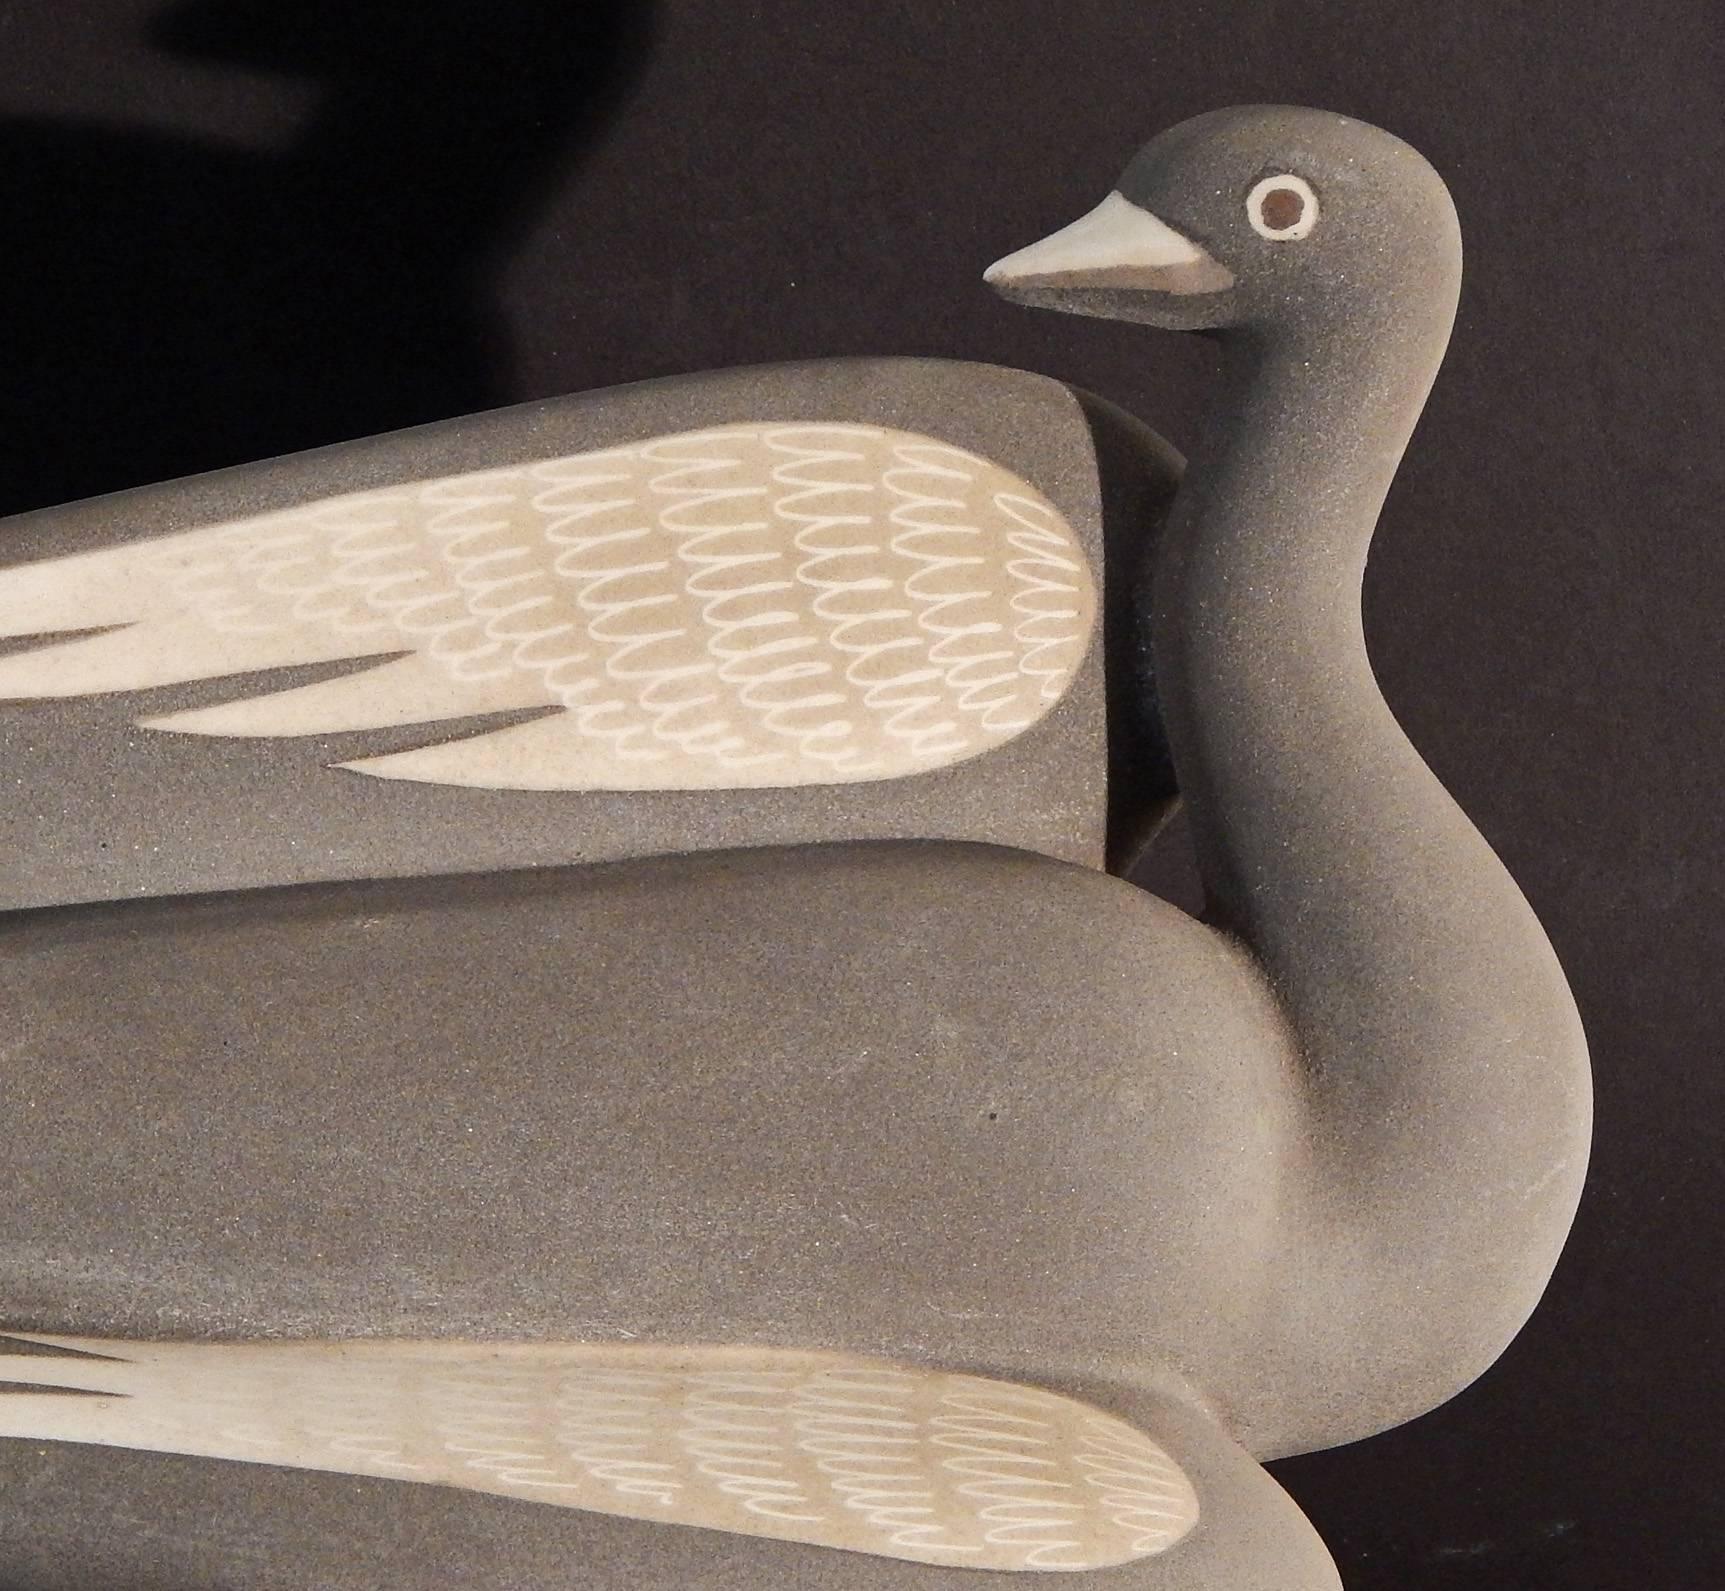 L'une des sculptures les plus dynamiques et gagnantes de Waylande Gregory, cet exemple émaillé dans une couleur flanelle grise veloutée, le cygne est montré de deux côtés, avec ses jolies ailes taupe en pleine exposition. Comme la plupart de ses